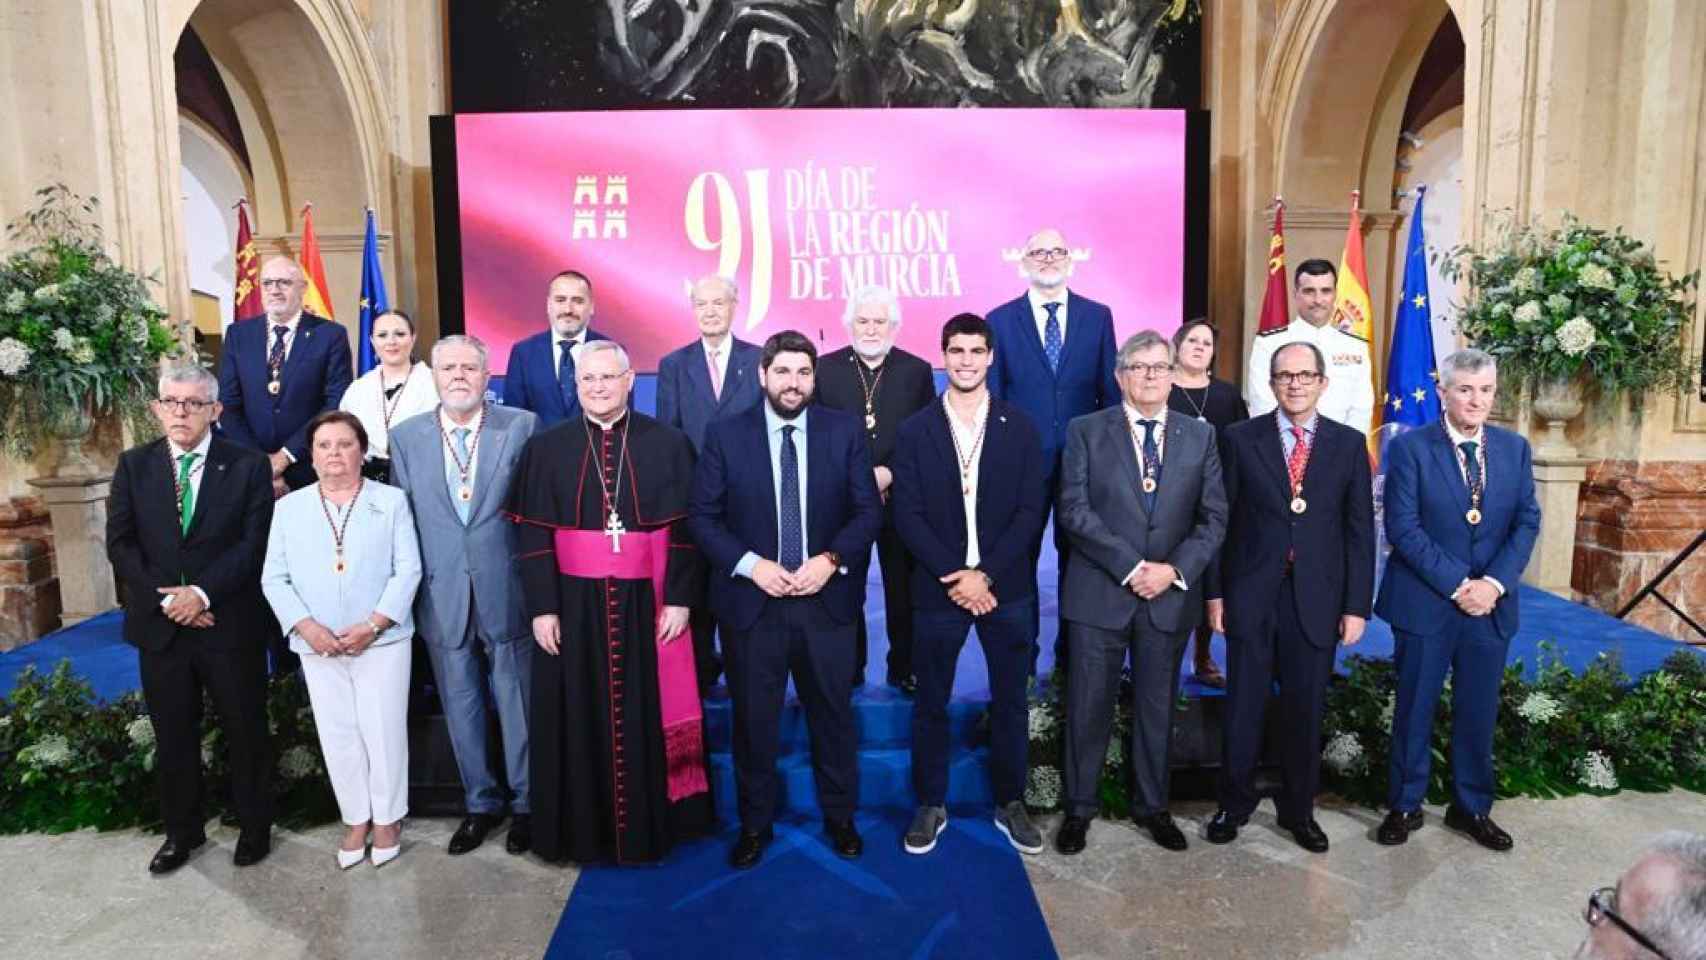 López Miras posando junto a todos los premiados y homenajeados en el Día de la Región de Murcia.